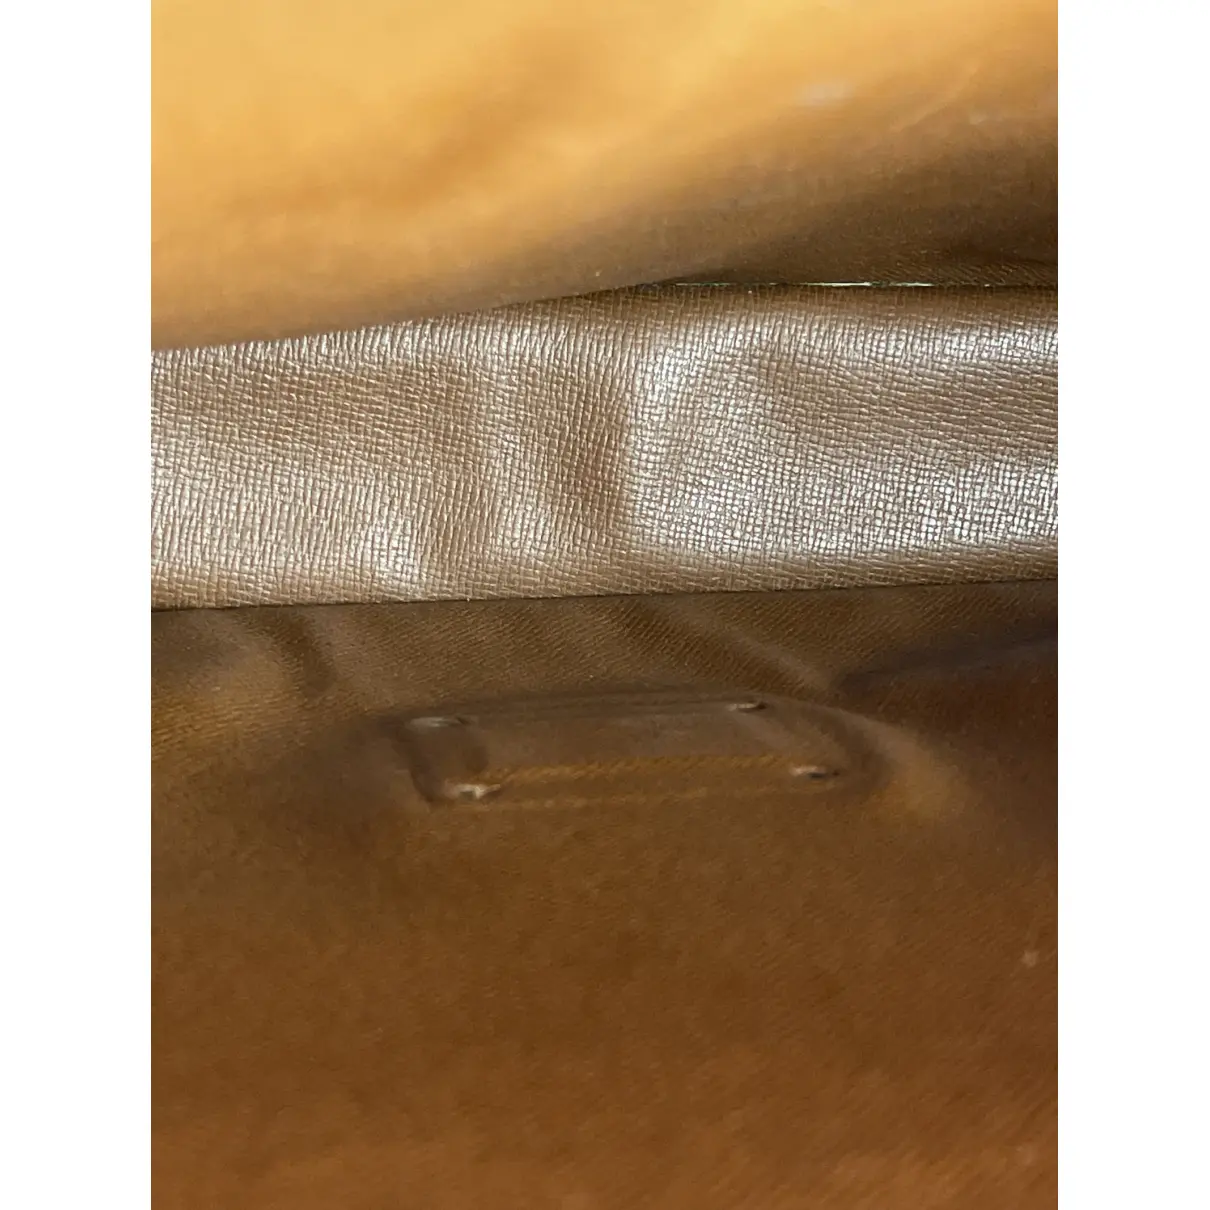 Monceau cloth clutch bag Louis Vuitton - Vintage